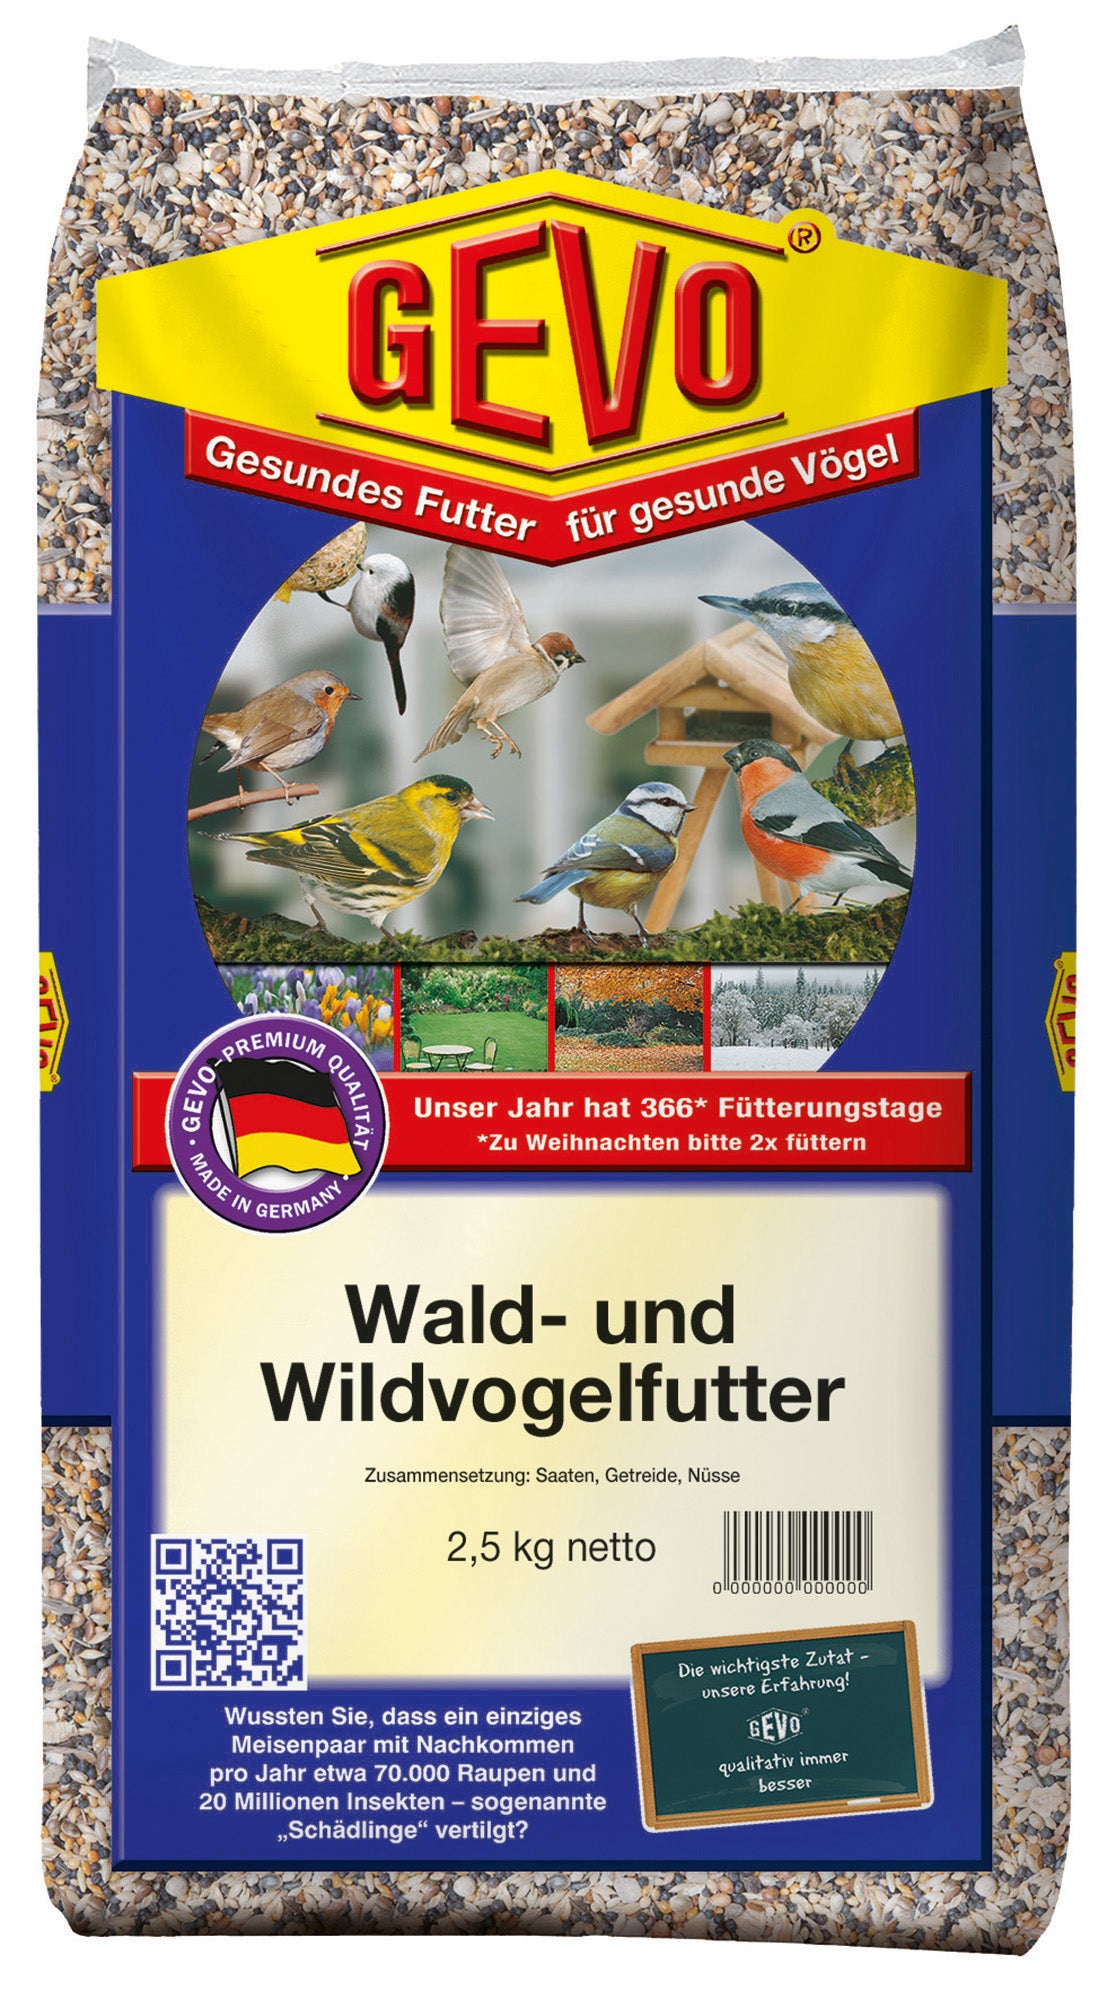 Wald- und Wildvogelfutter (2,5 kg) | Wald- und Wildvogelfutter von GEVO